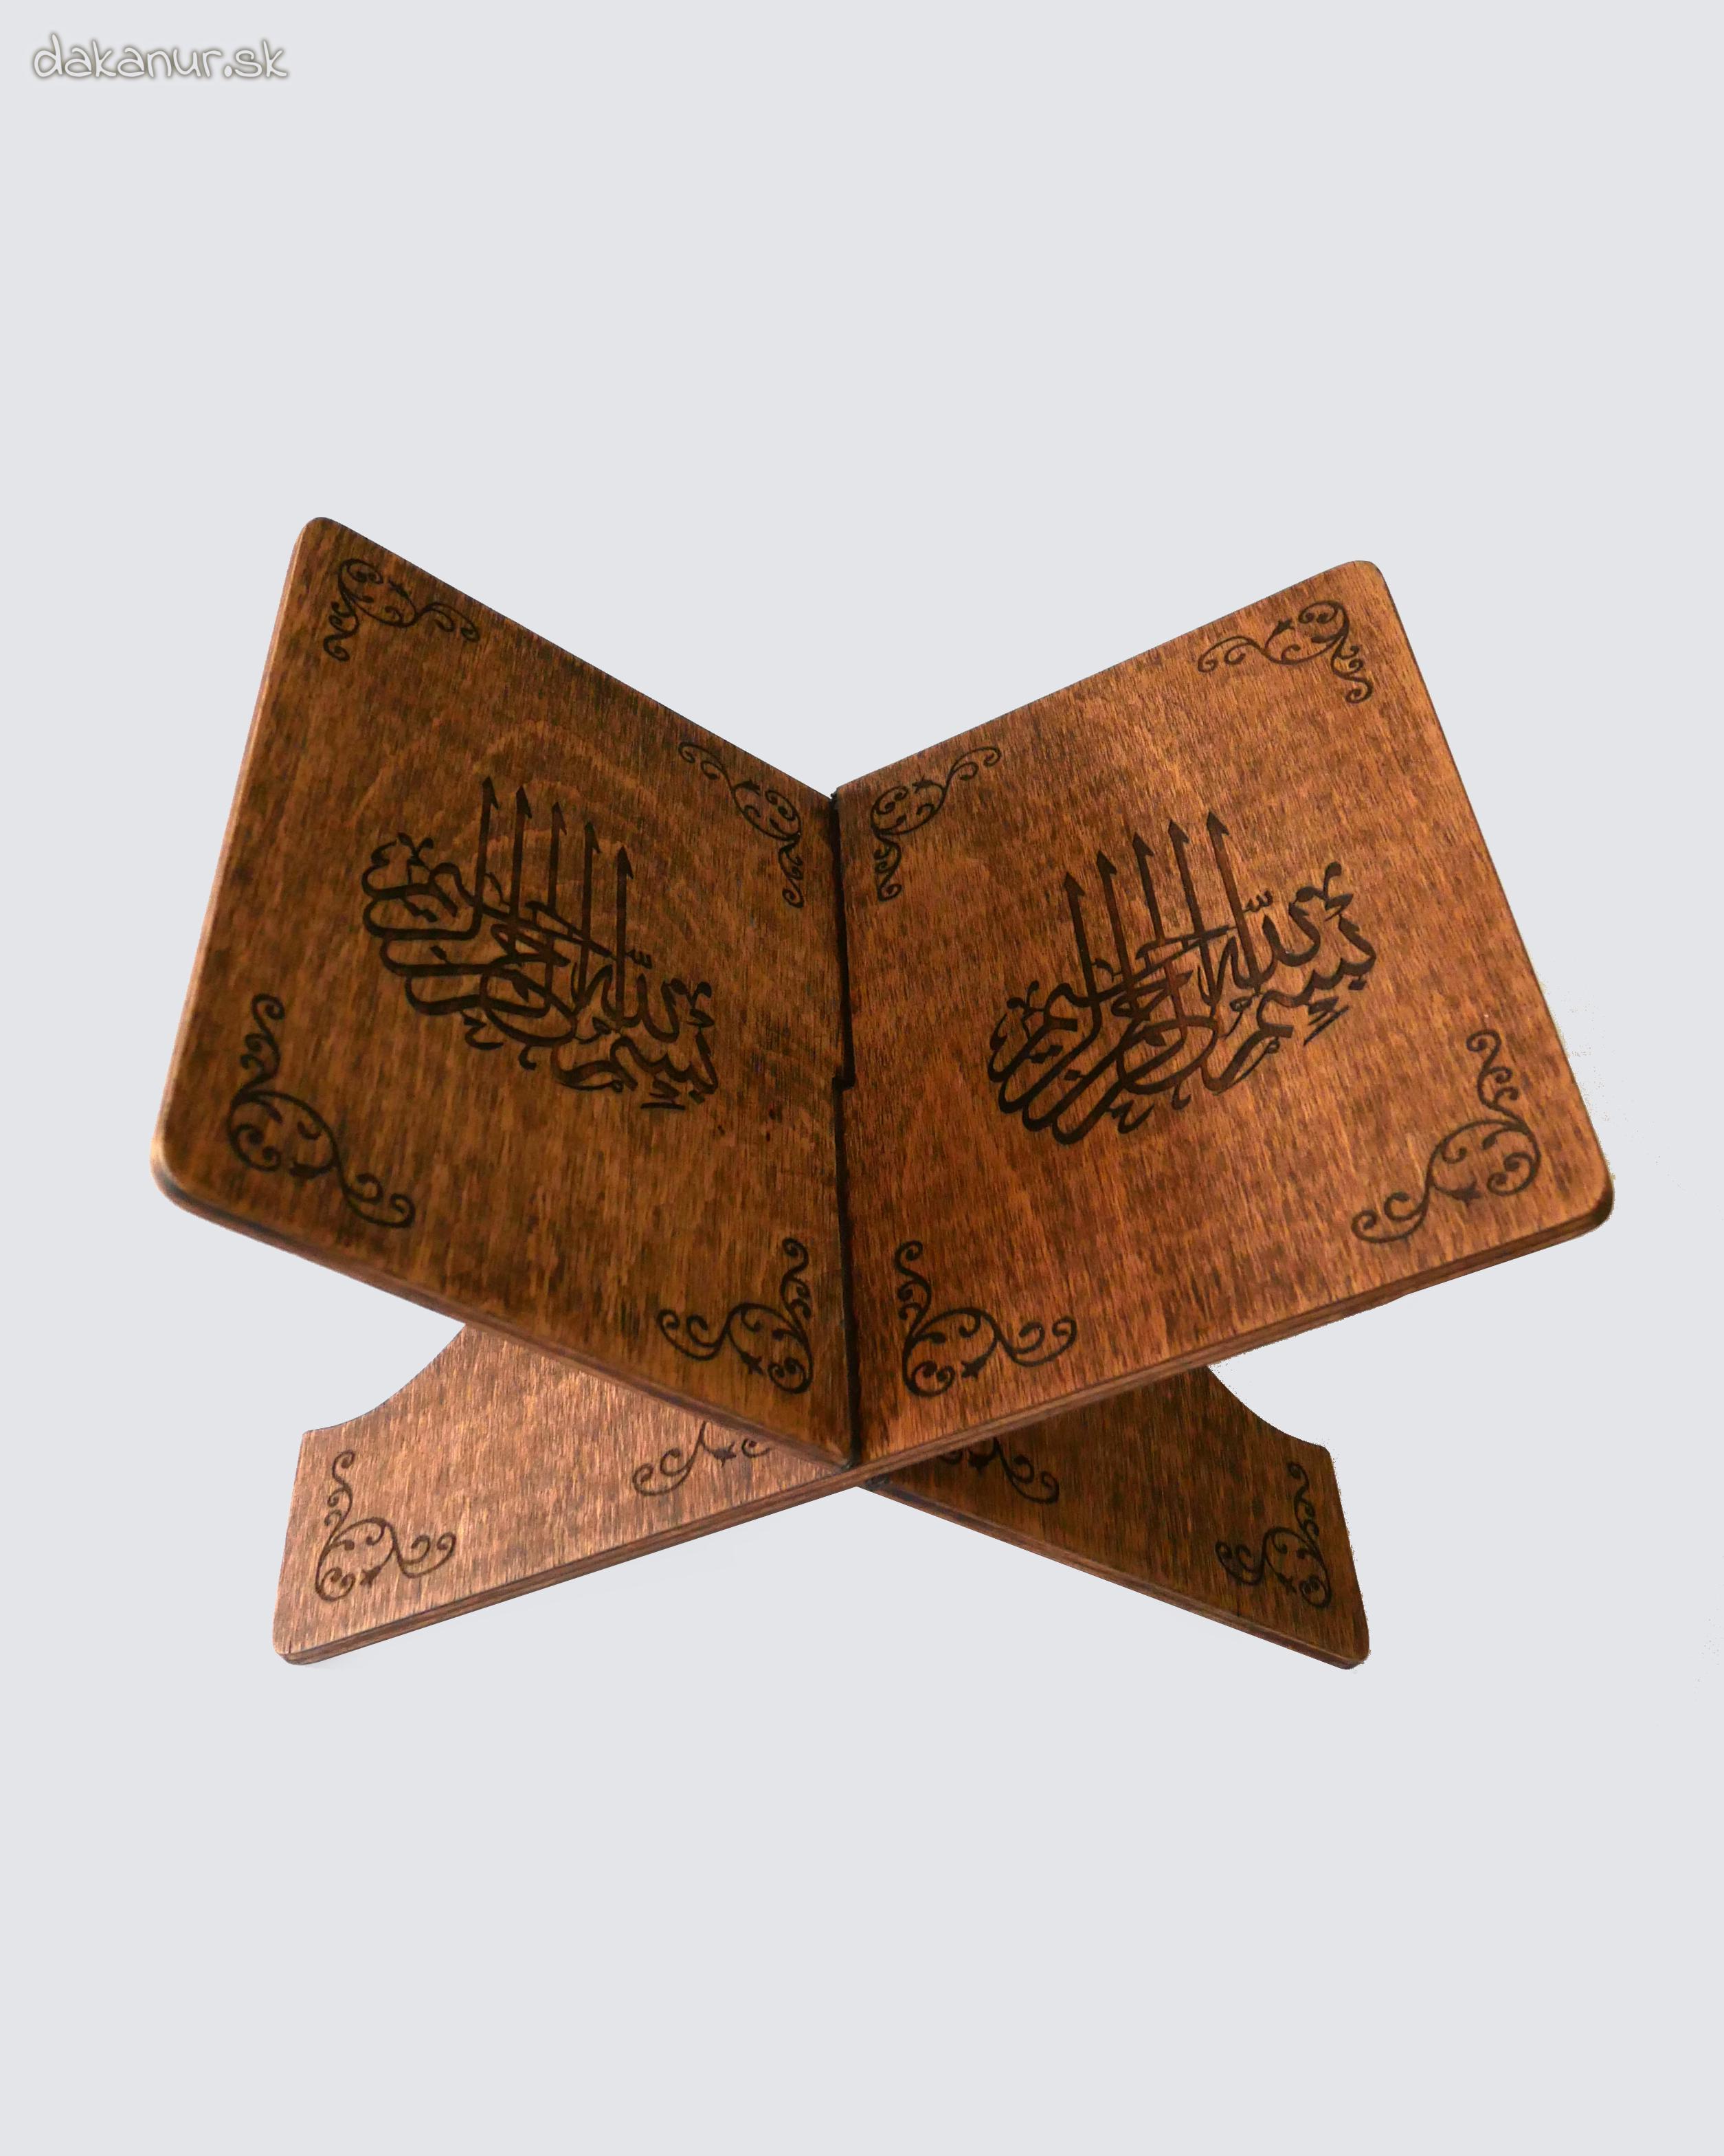 Stojan pod Korán, veľký, tmavý, kaligrafia